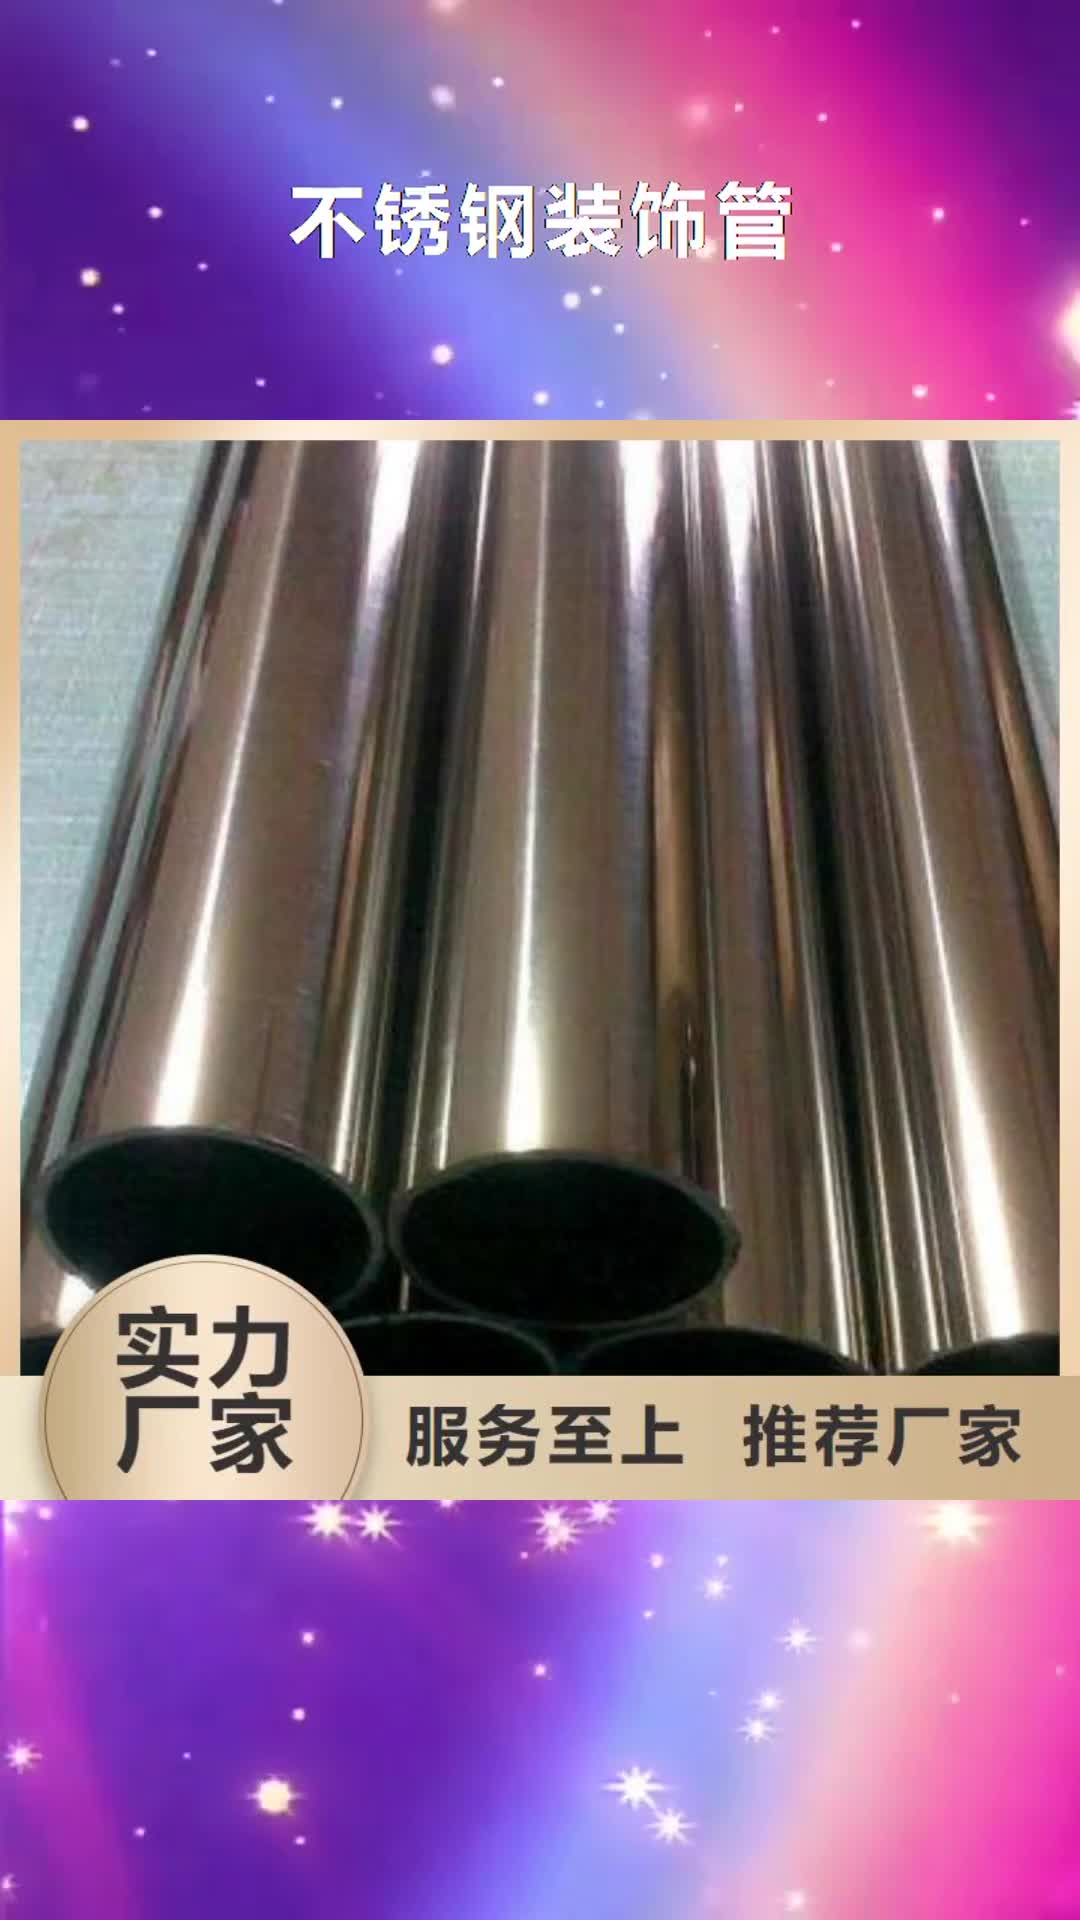 广东 不锈钢装饰管,【钛合金丝】自营品质有保障